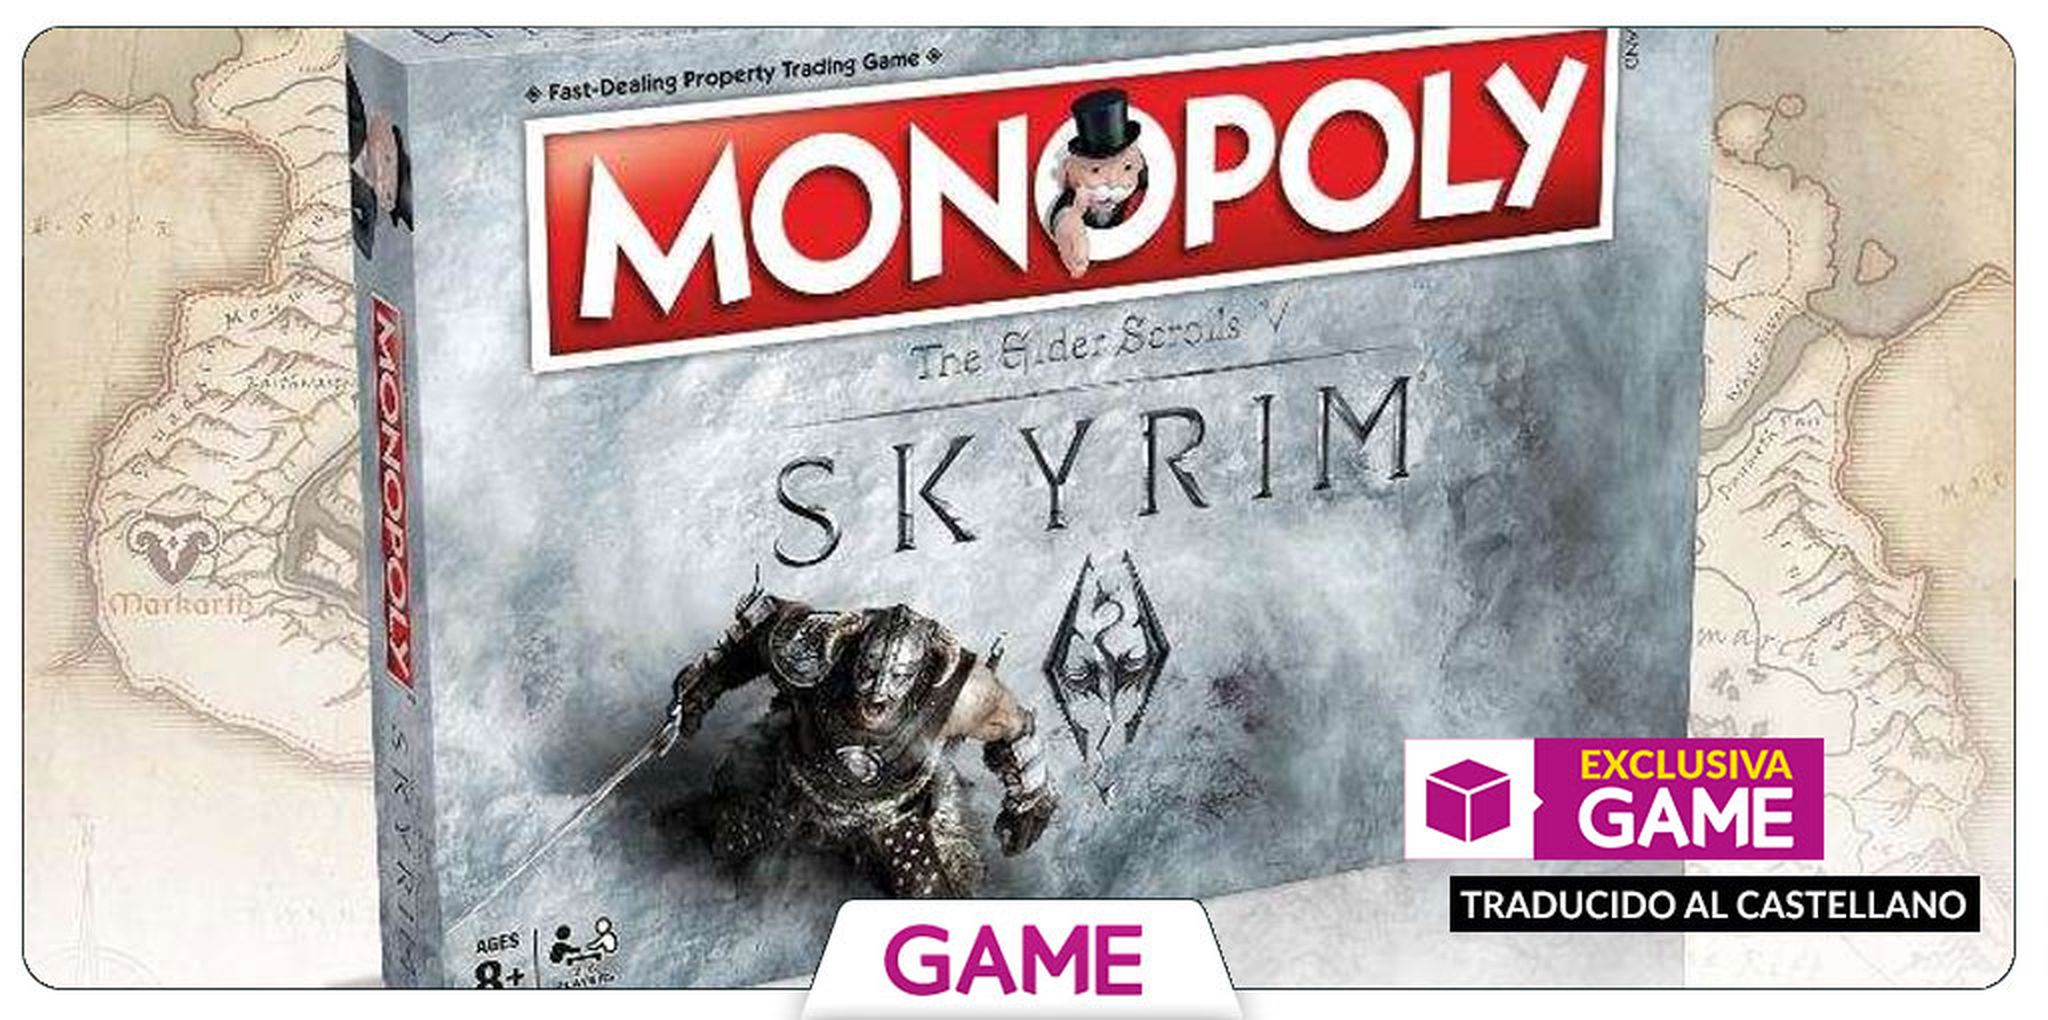 Monopoly de Skyrim en castellano exclusivo de GAME